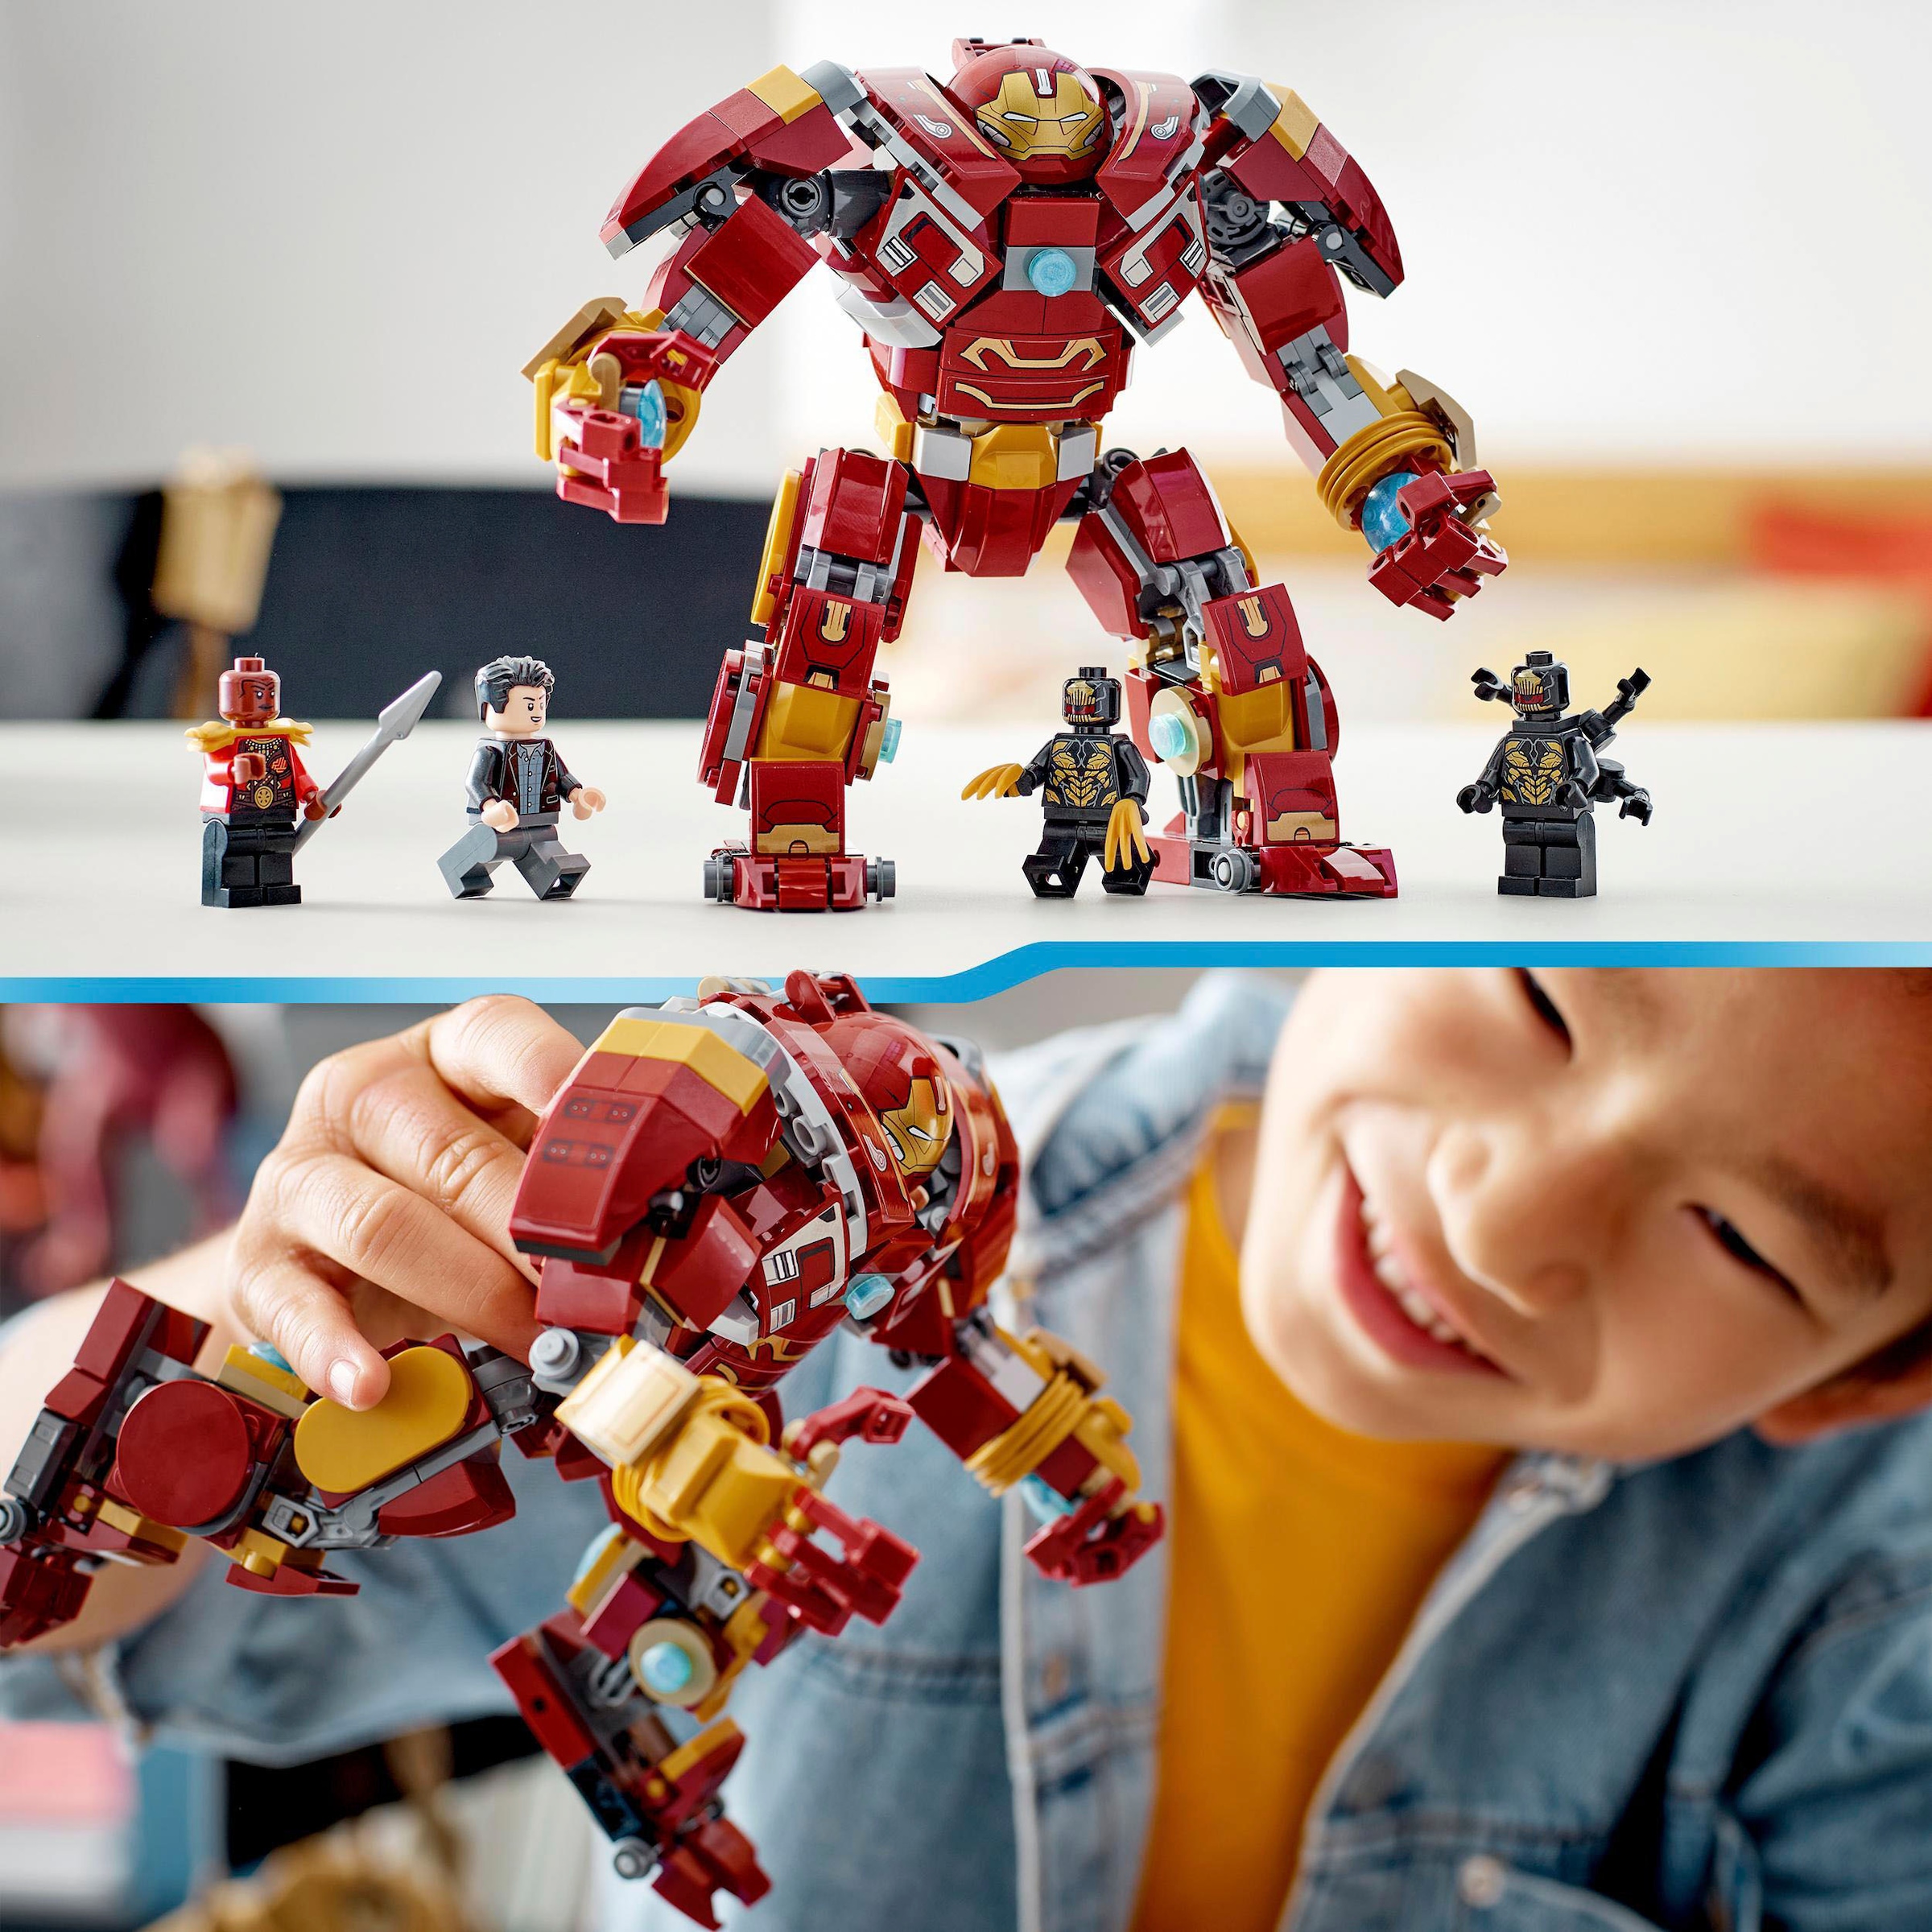 LEGO® Konstruktionsspielsteine »Hulkbuster: Der Kampf von Wakanda (76247), LEGO® Marvel«, (385 St.), Made in Europe